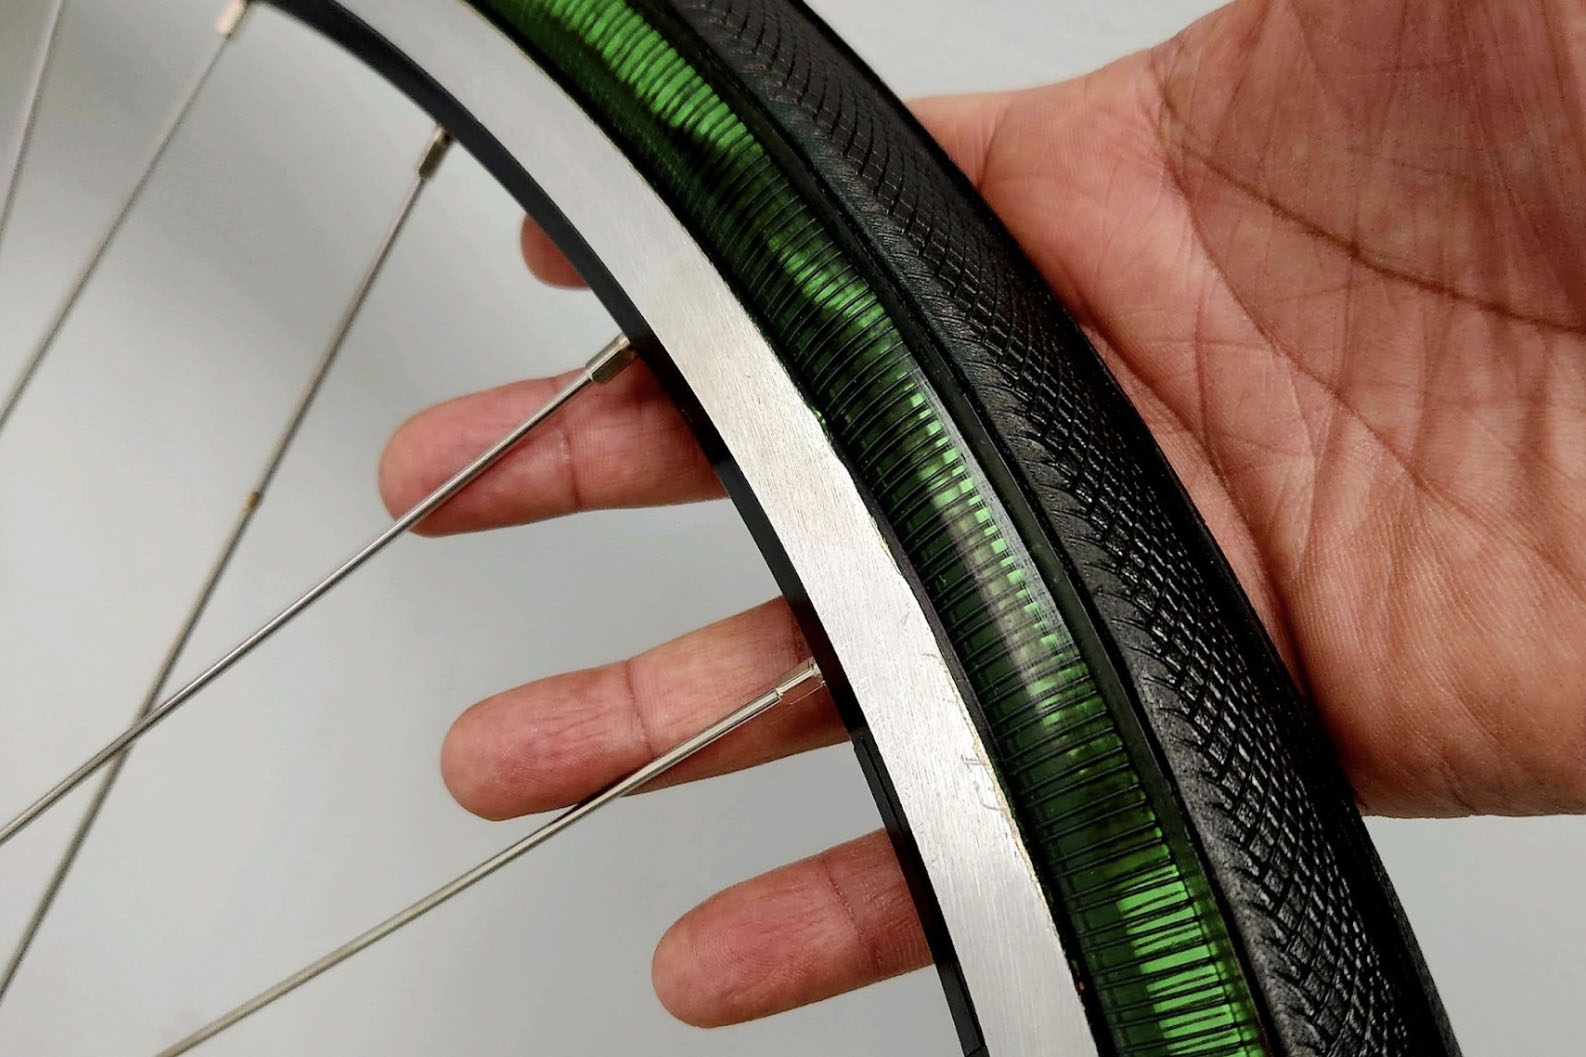 Metl ─ велосипедные шины по цене $500, изготовленные из разработанного в NASA материала и имеющие эффект памяти формы